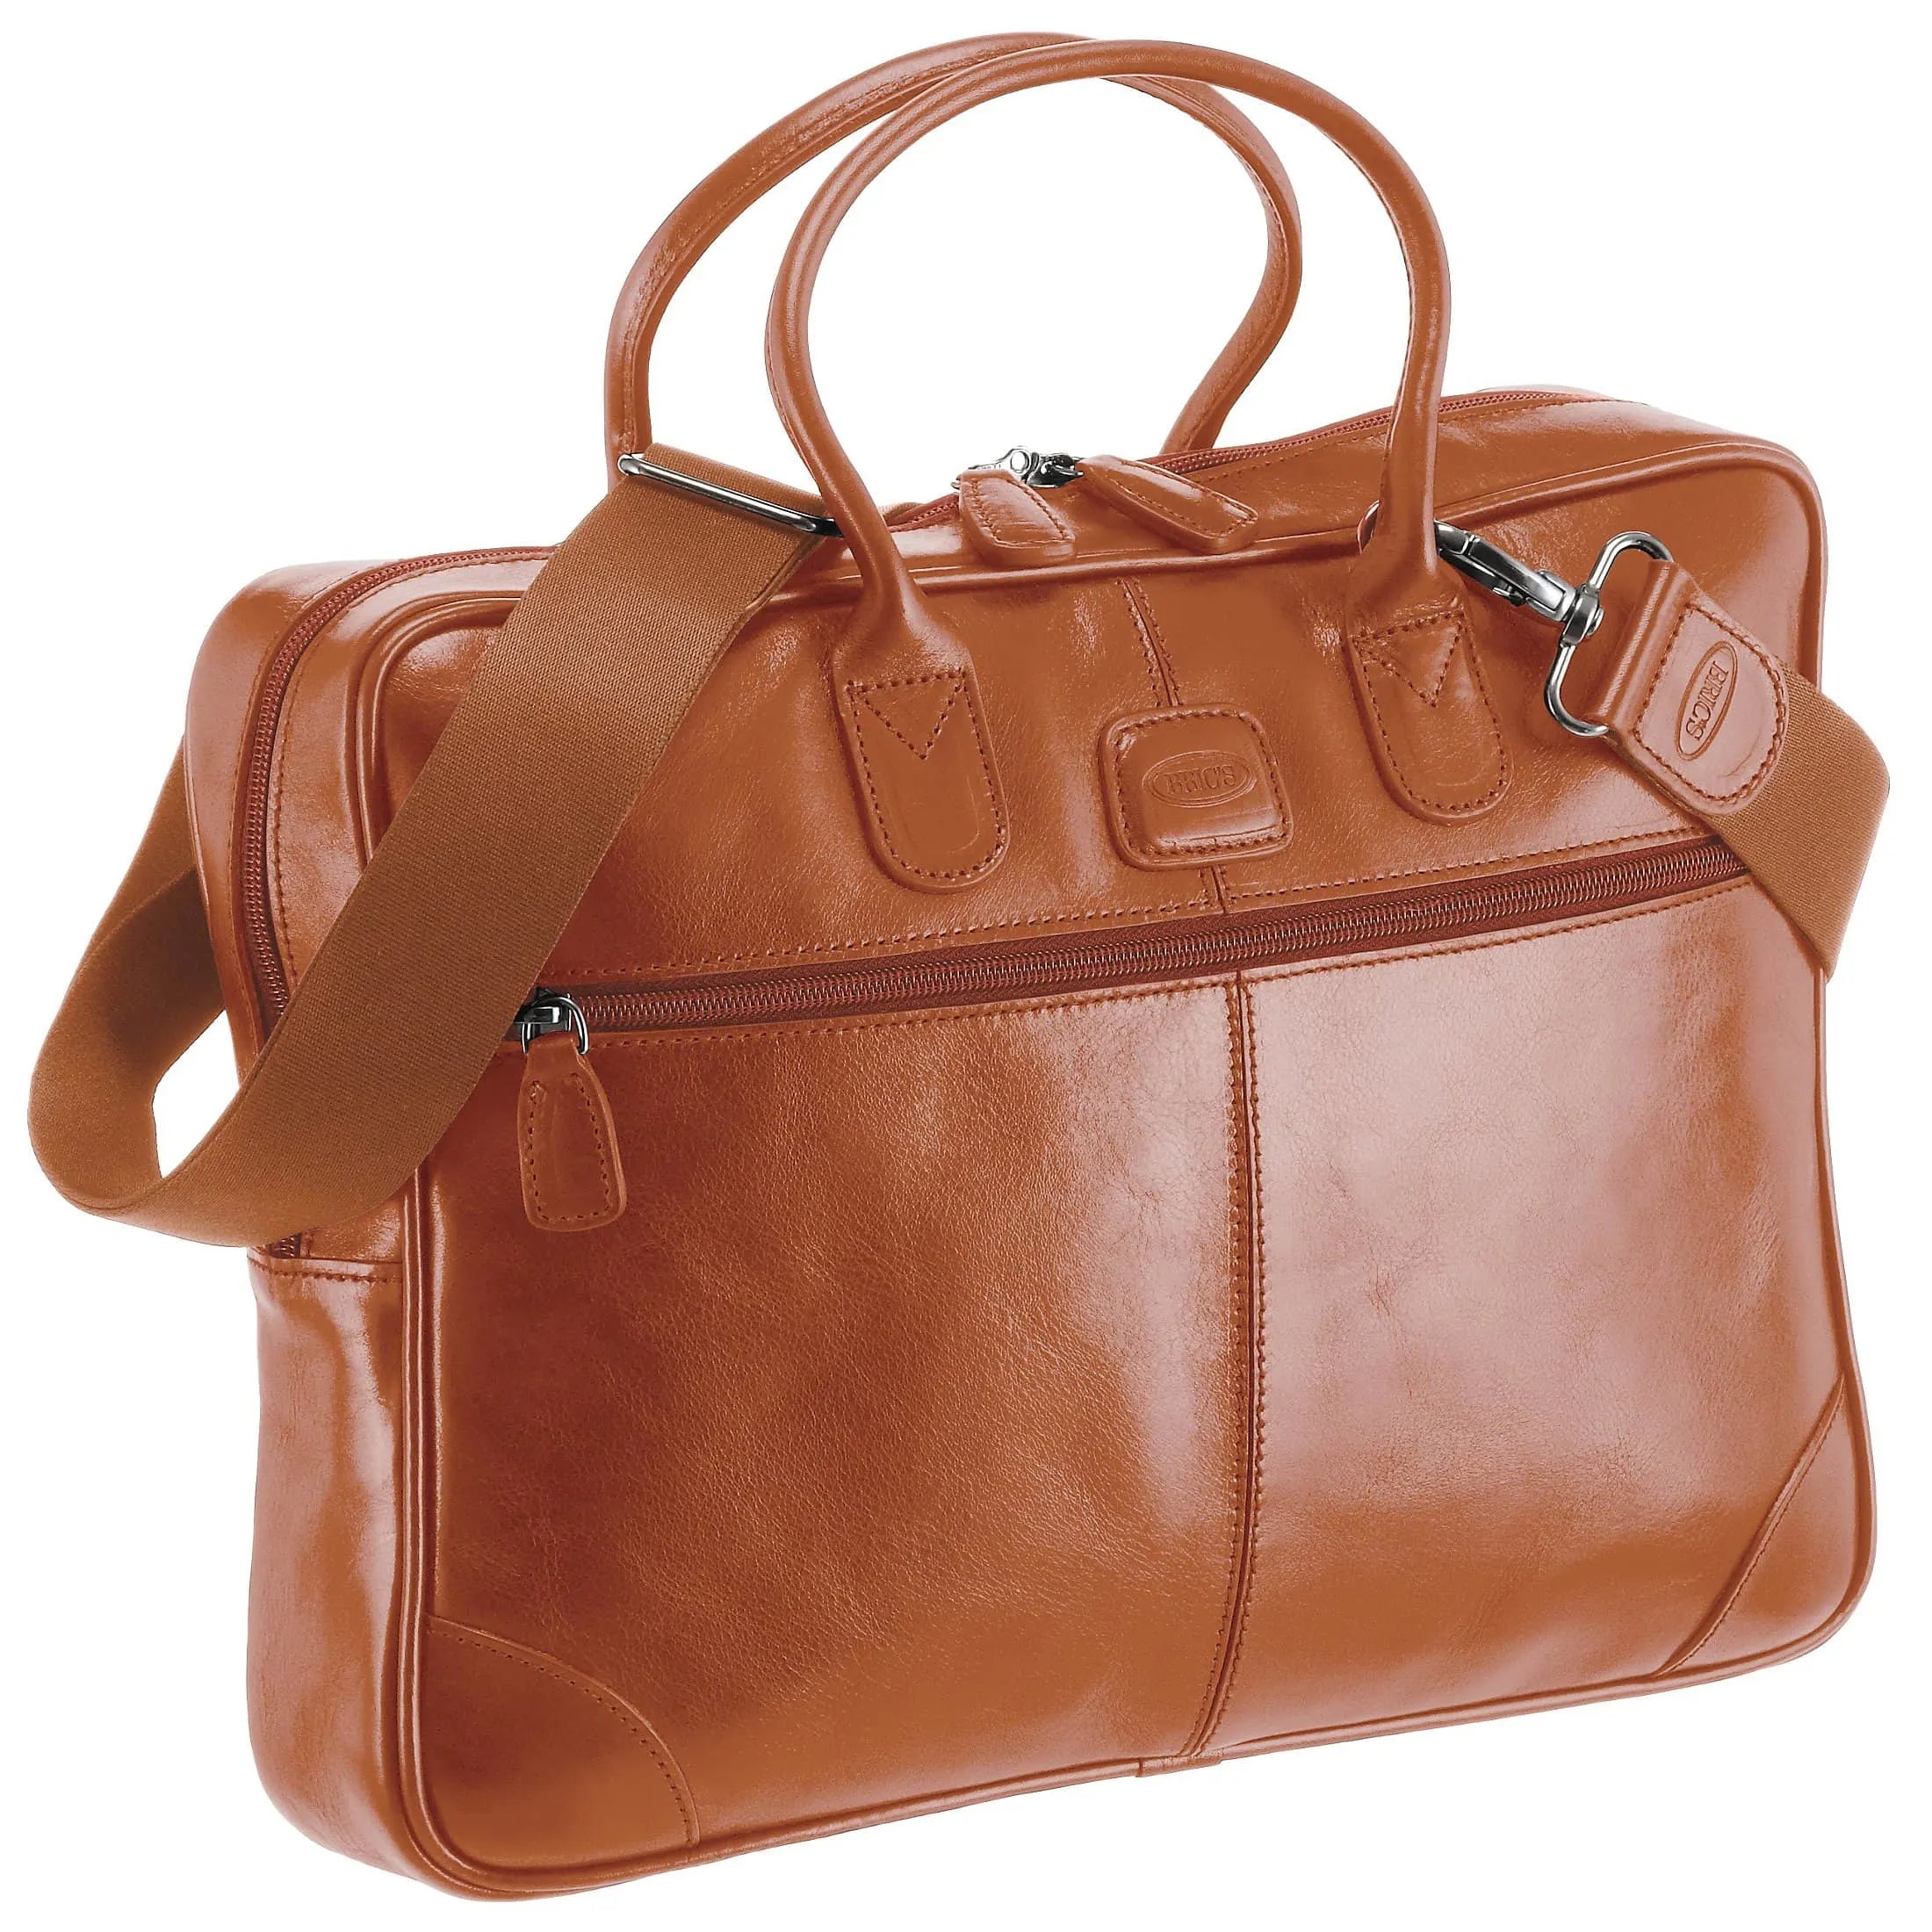 Brics Life Pelle briefcase with laptop compartment 38 cm - cognac